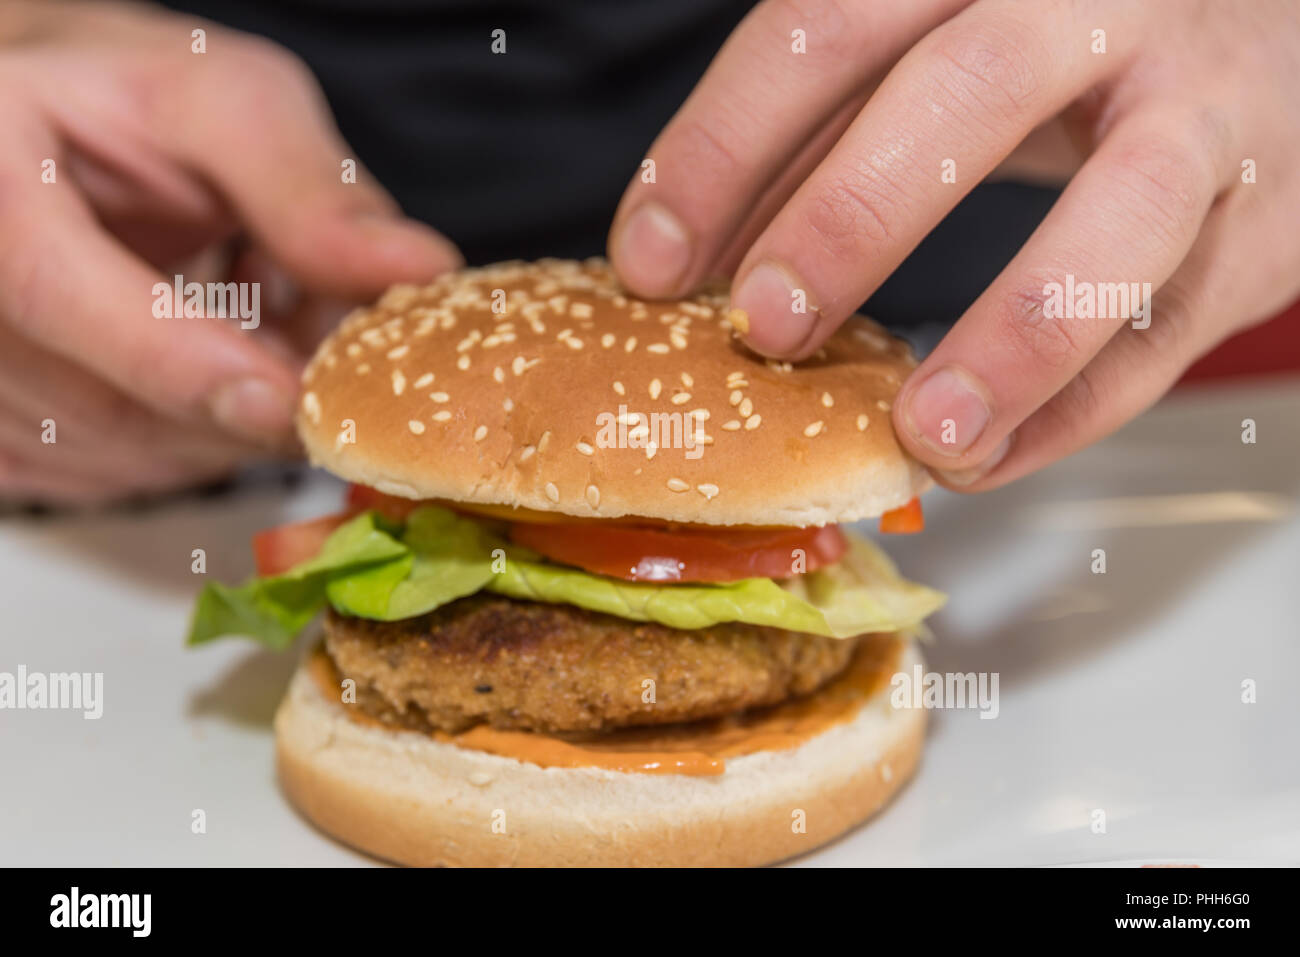 Cook prepares mixed hamburger fresh - close-up Stock Photo